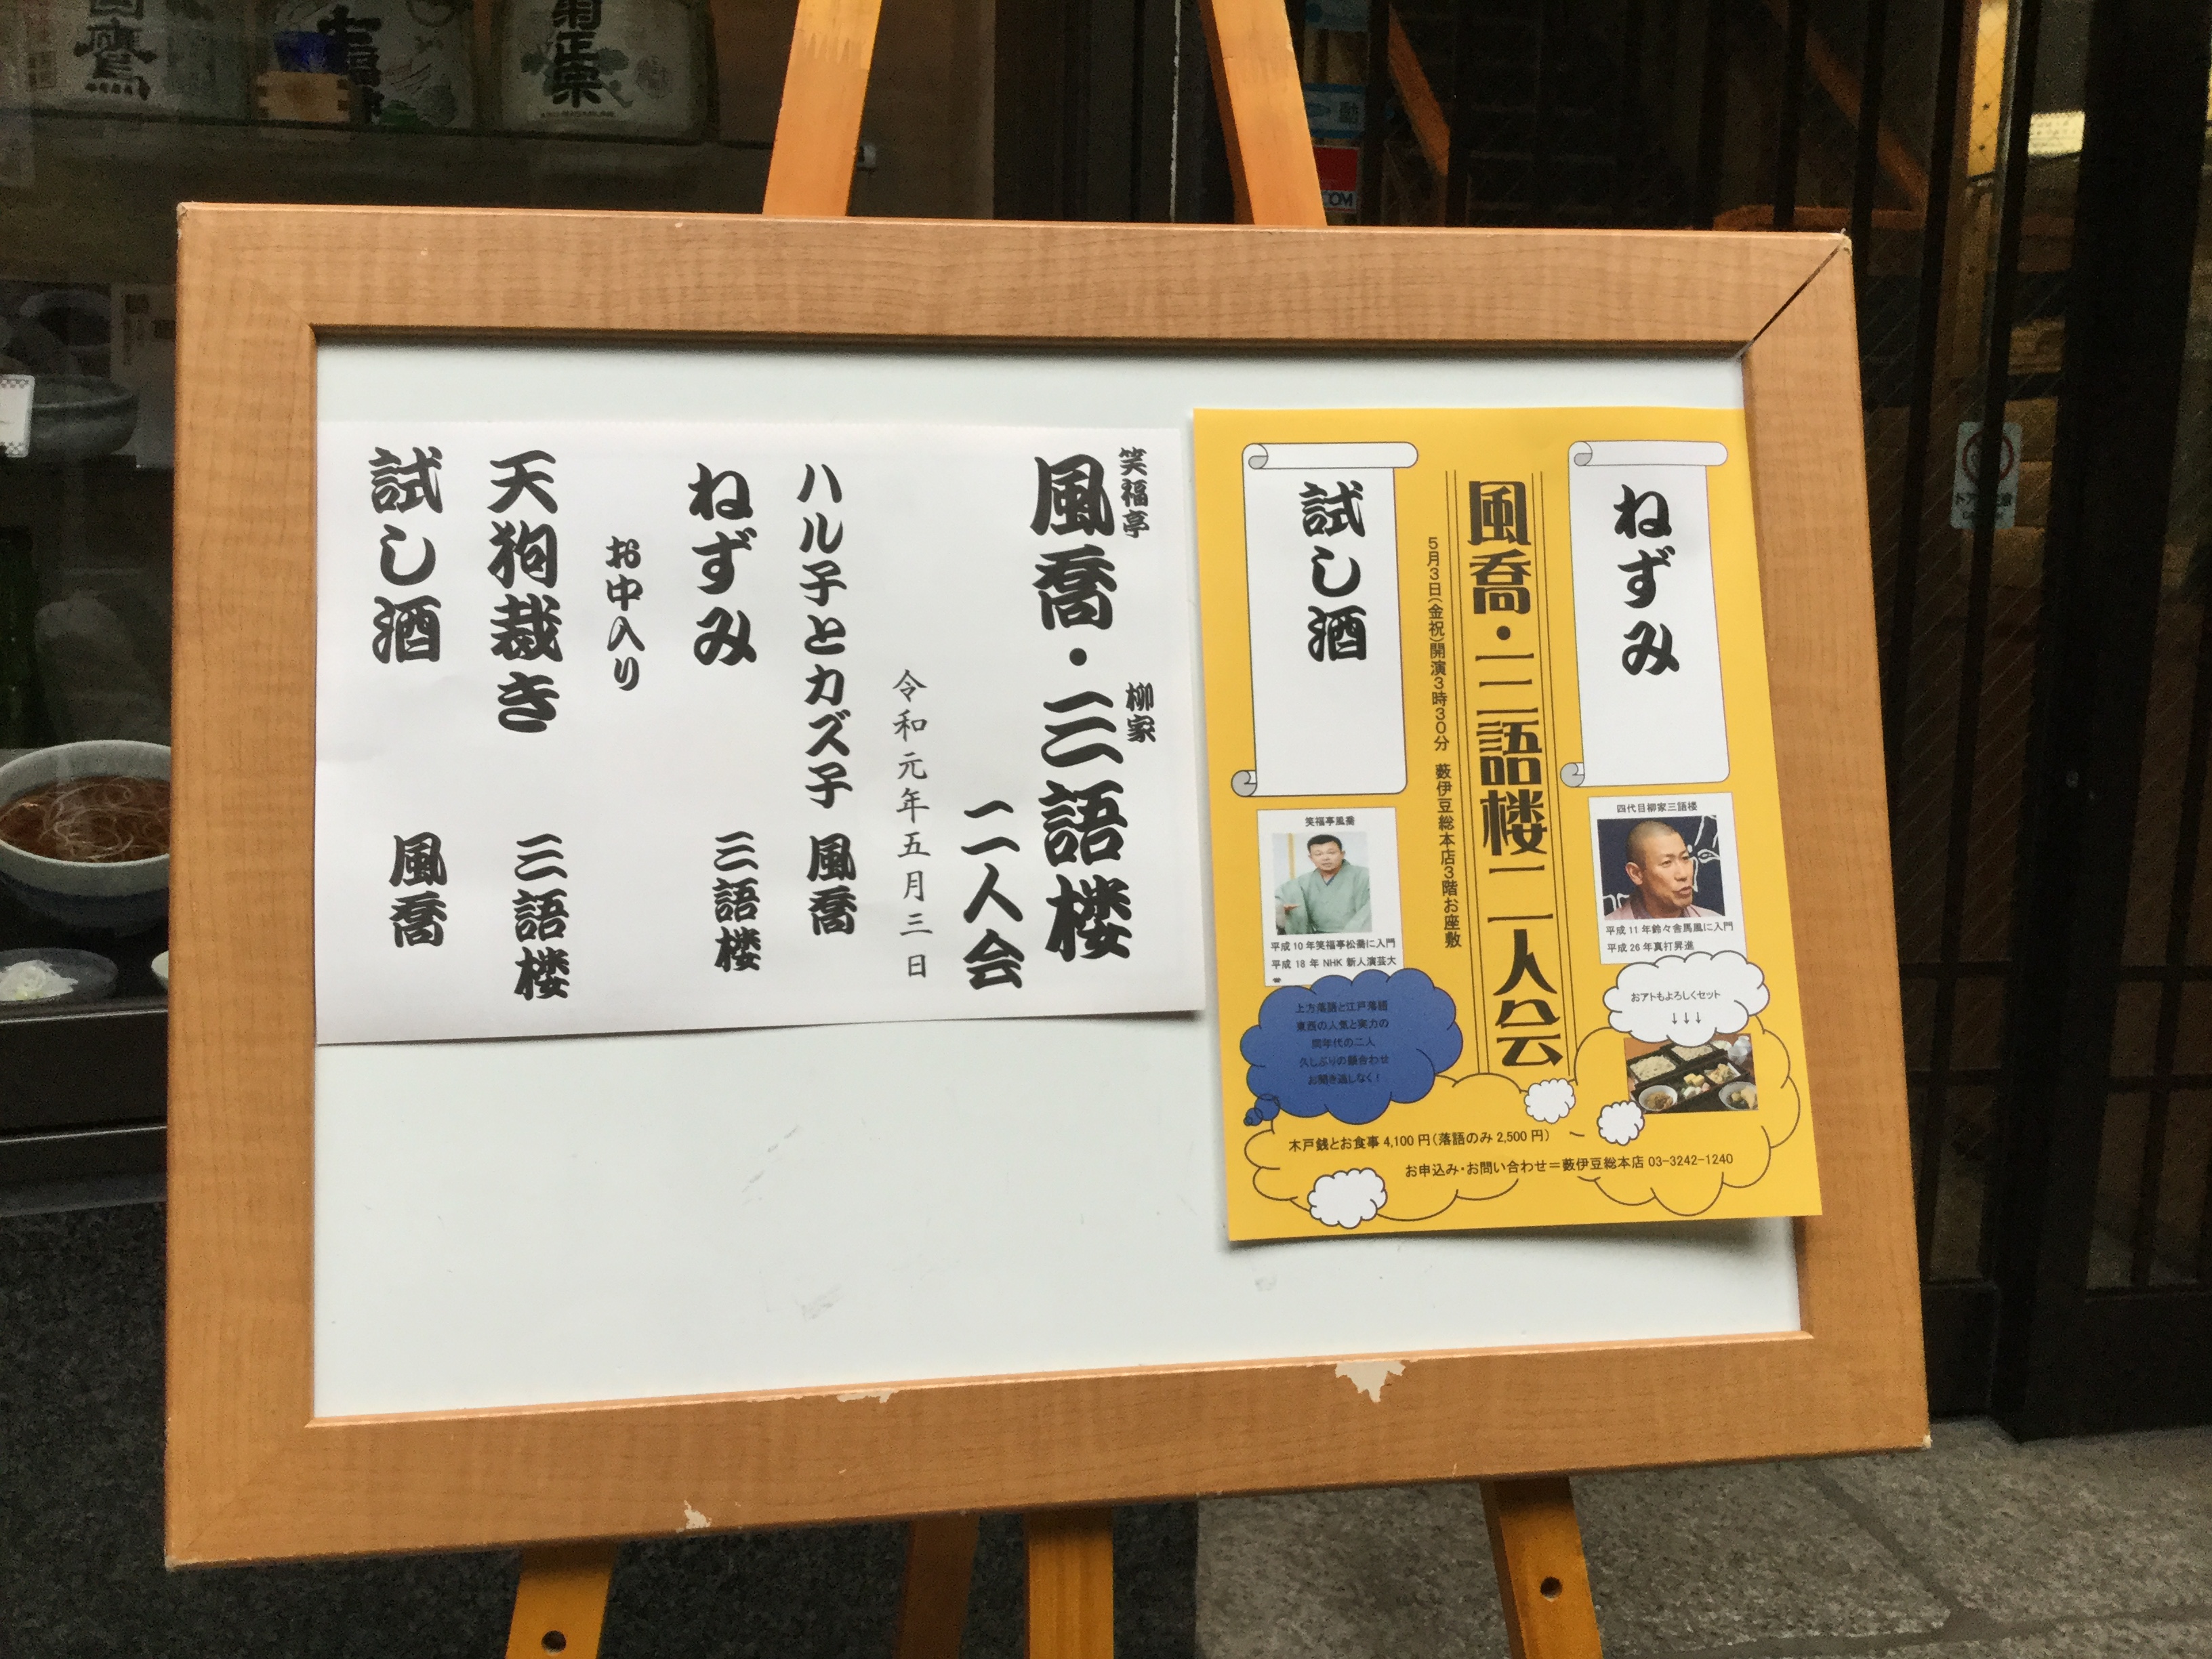 日本橋の老舗蕎麦屋「藪伊豆総本店」薮伊豆寄席「風喬 三語楼 二人会」５月３日（金祝）開催しました。投稿ナビゲーション